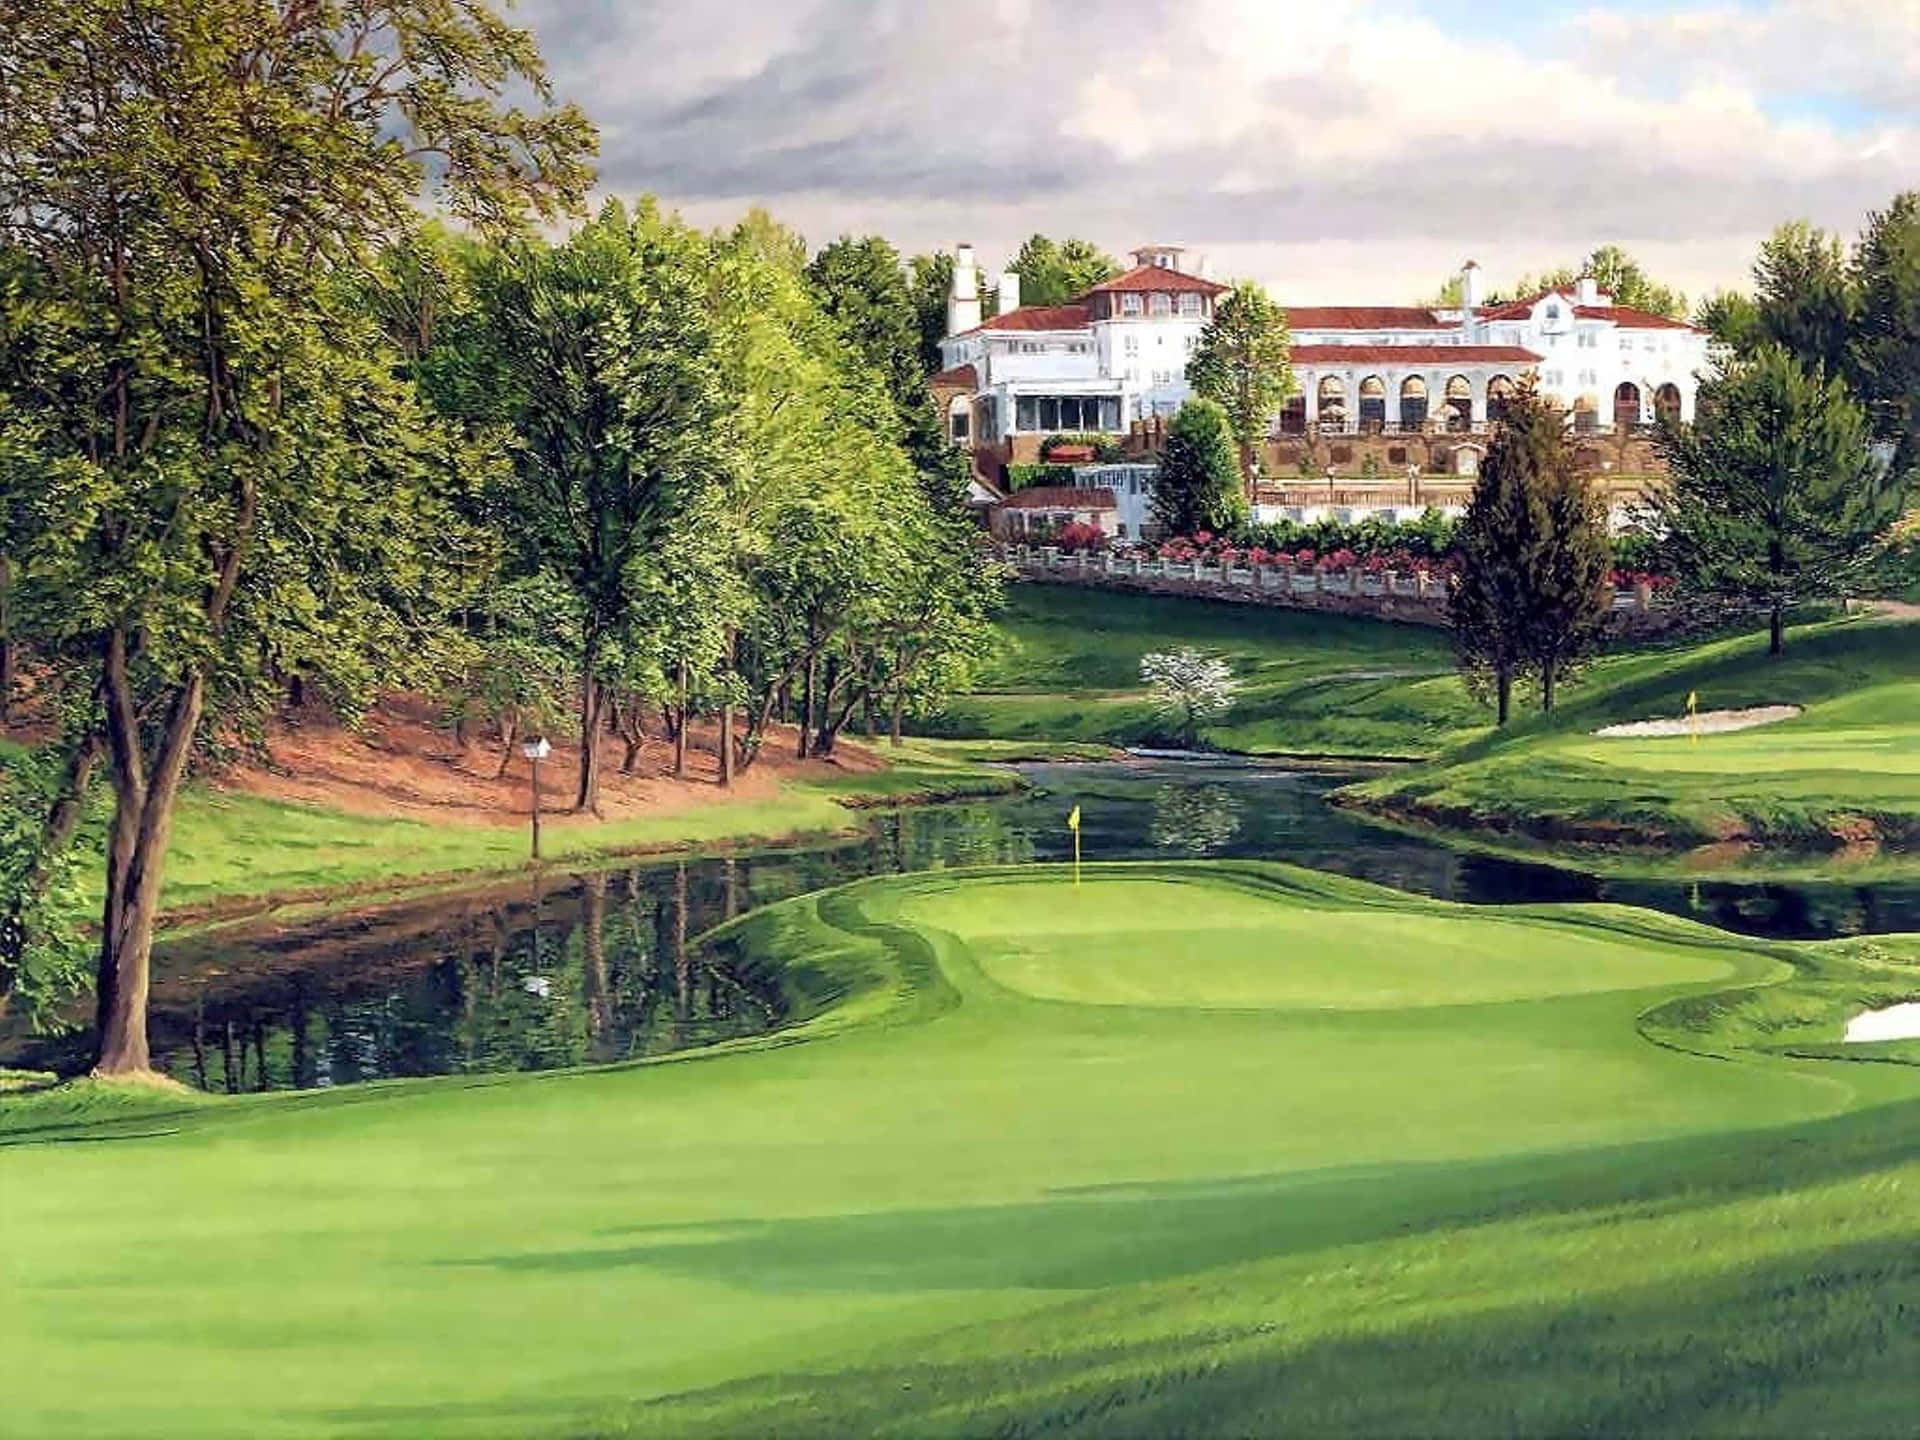 Nyd skønheden af naturen, mens du spiller golf på Augusta National Golf Course. Wallpaper